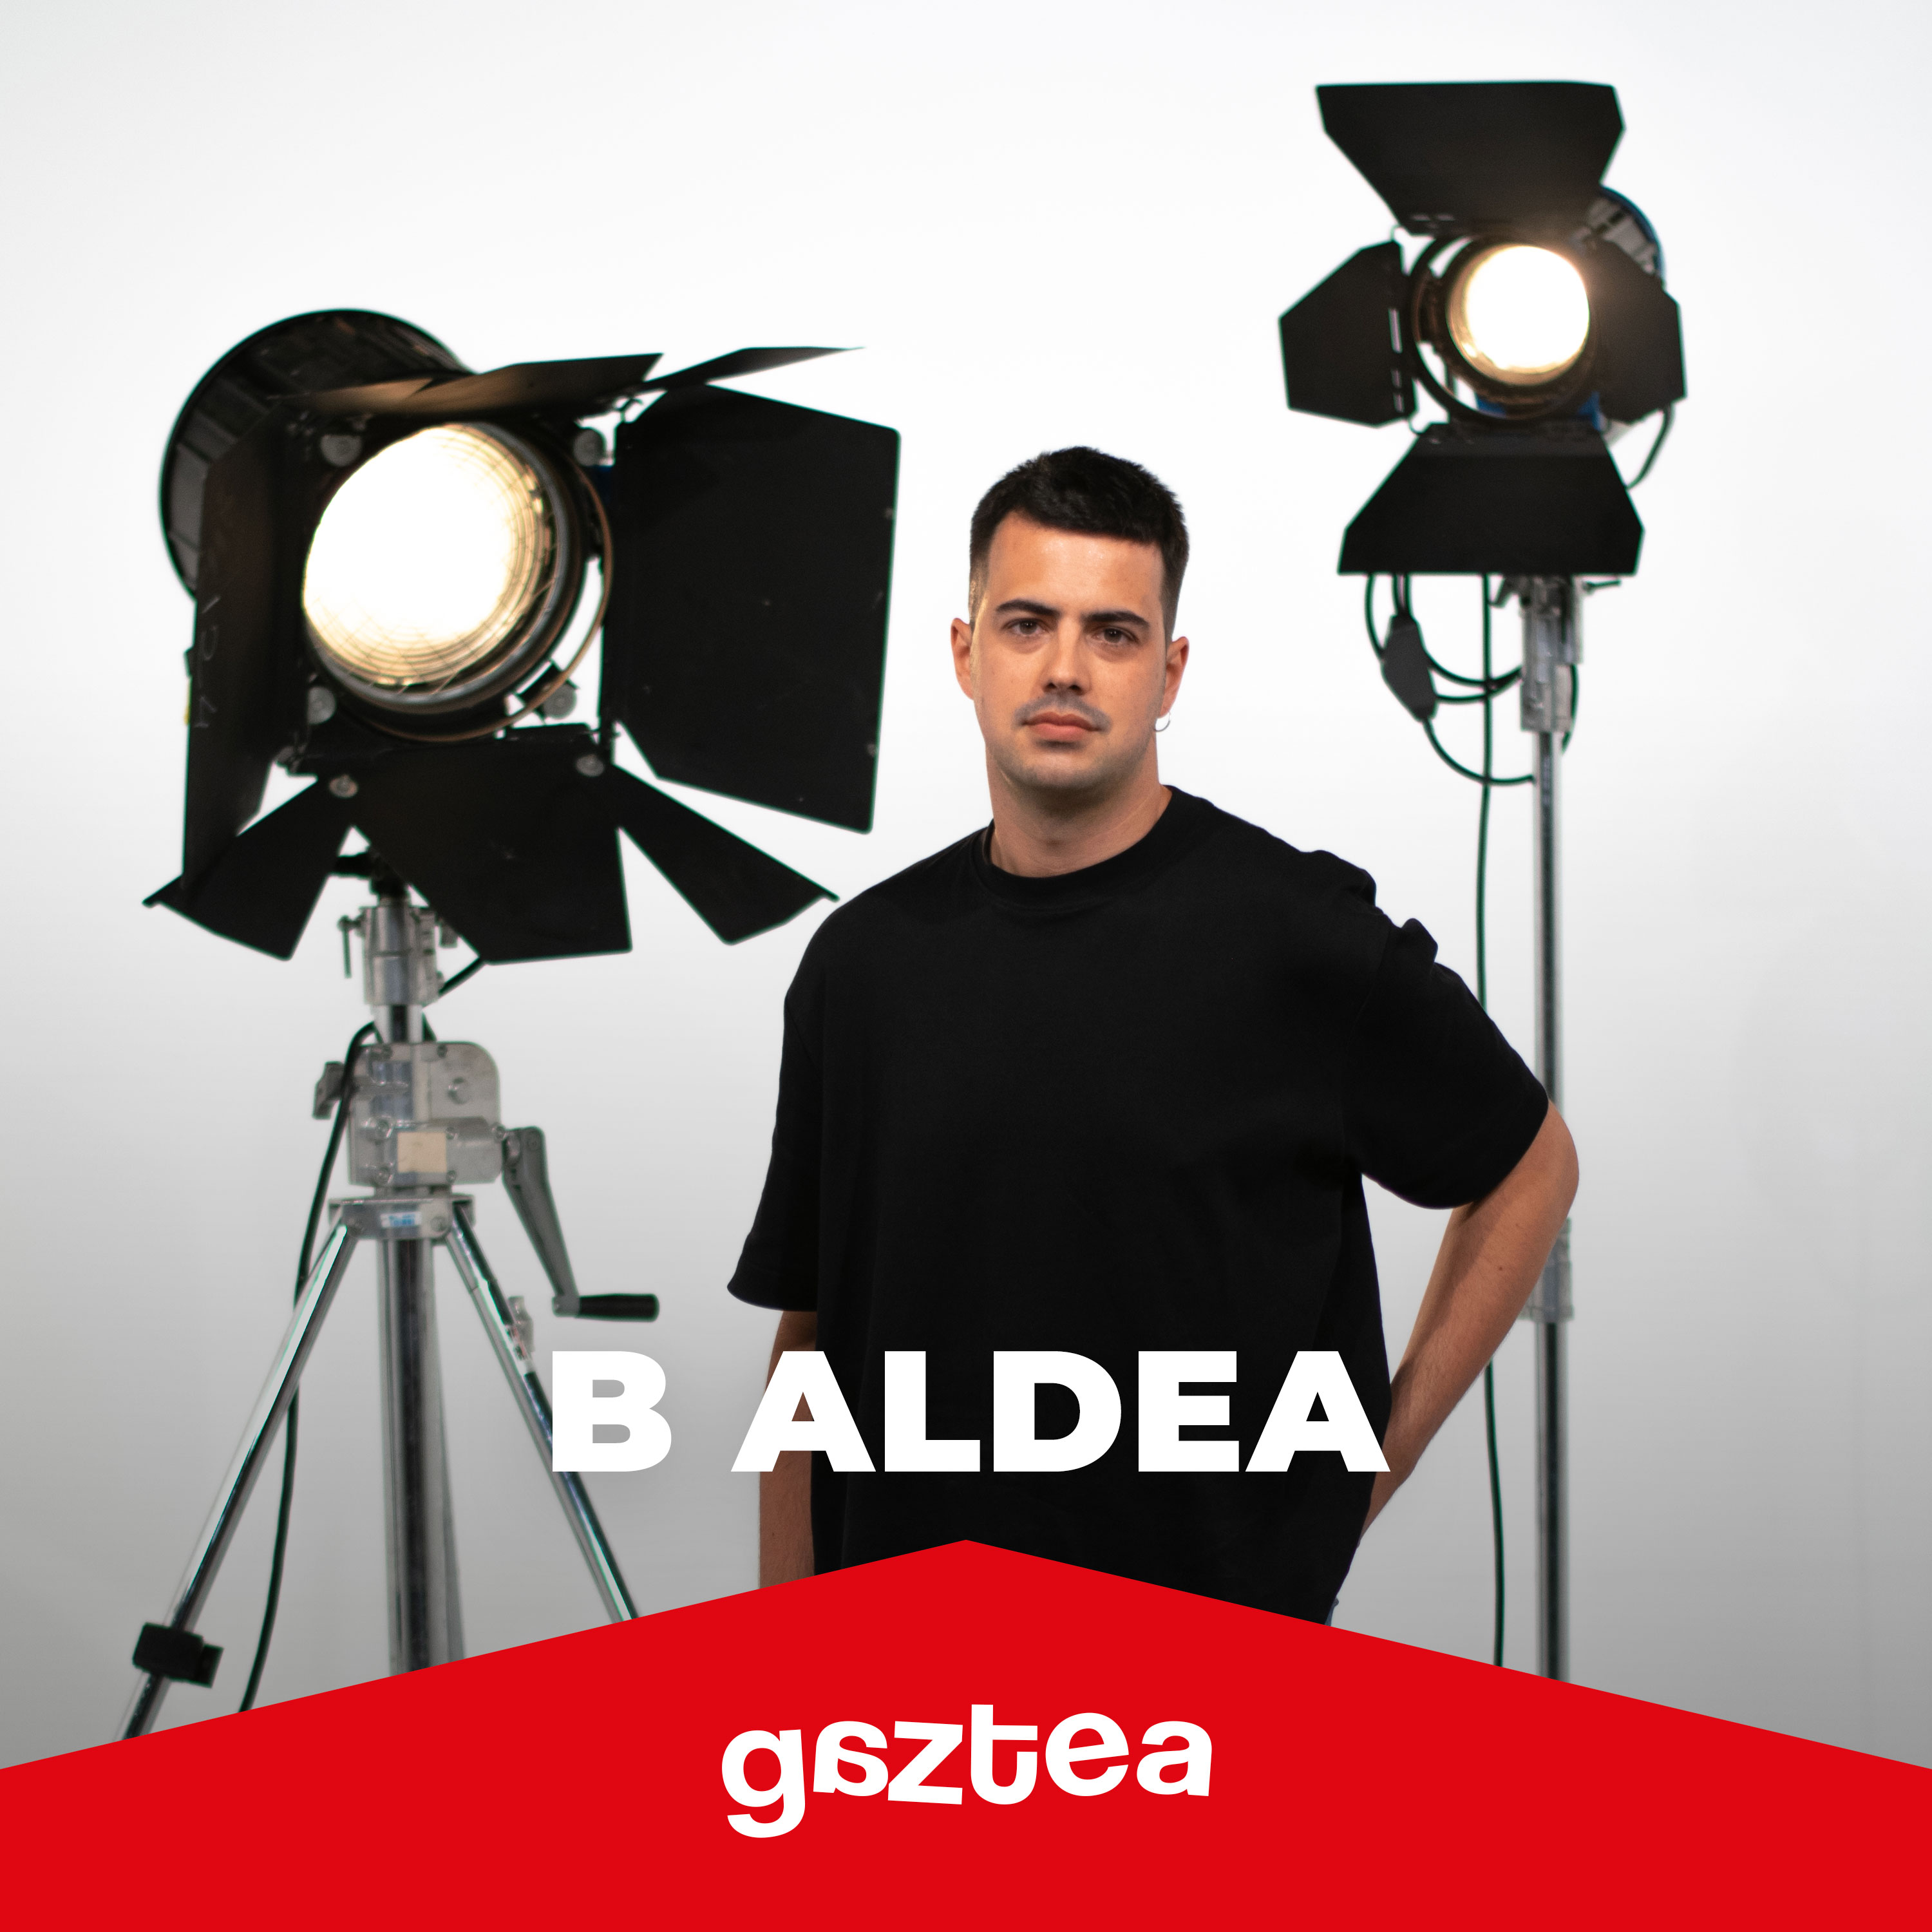 B Aldea